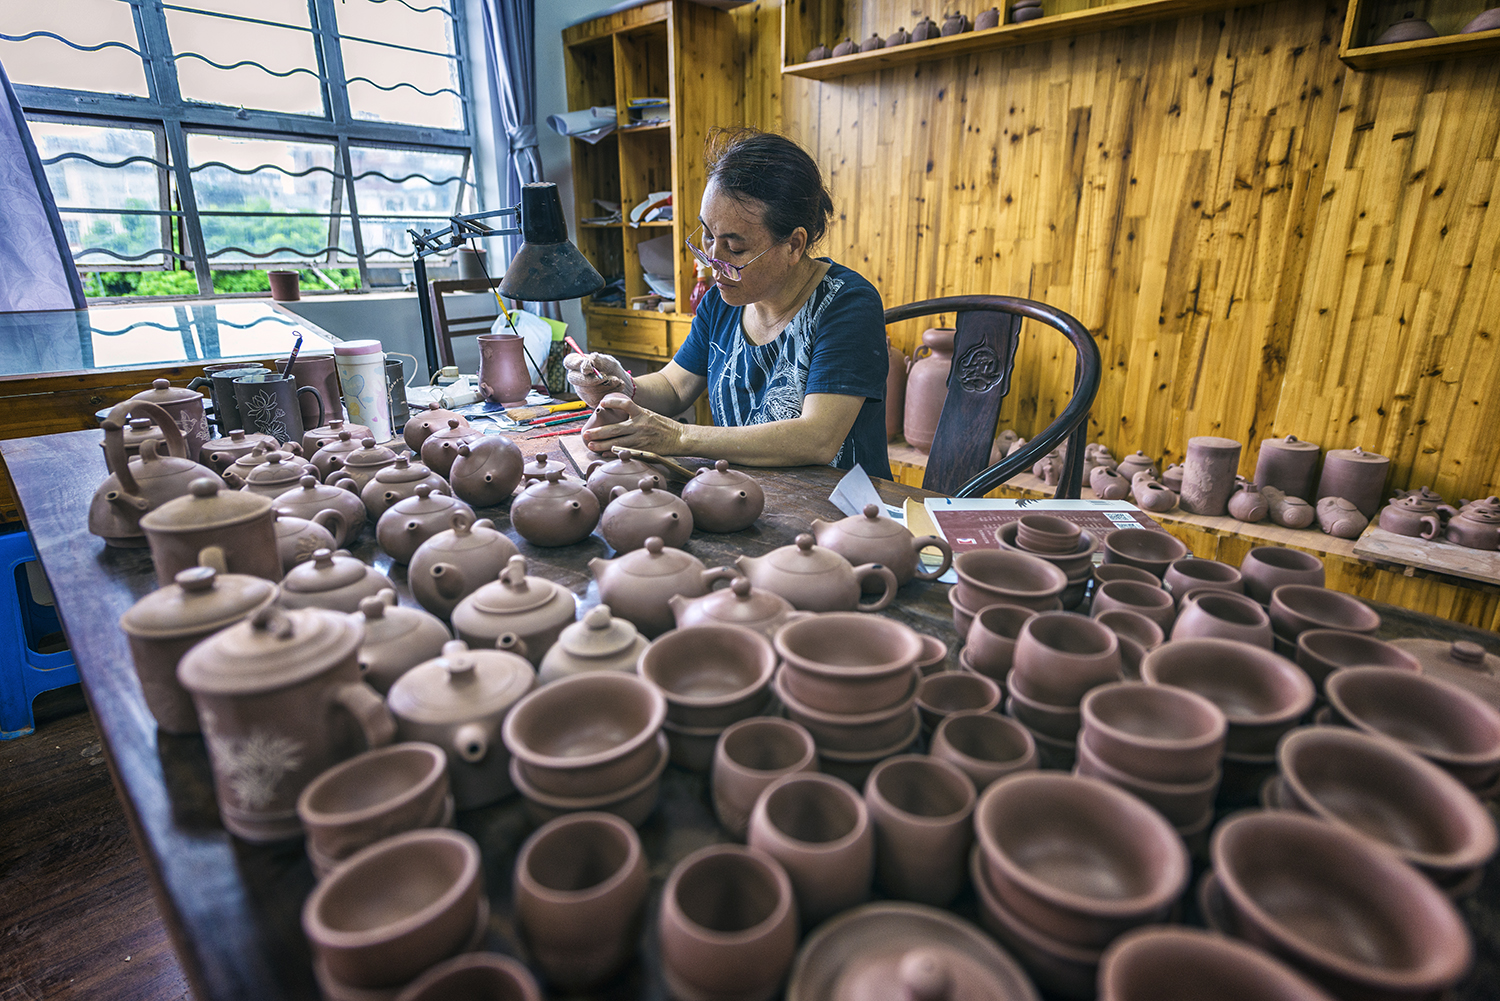 当炉盘上坭兴陶土质奇特,在装饰艺术上采用传统雕塑技法,纯手工制作